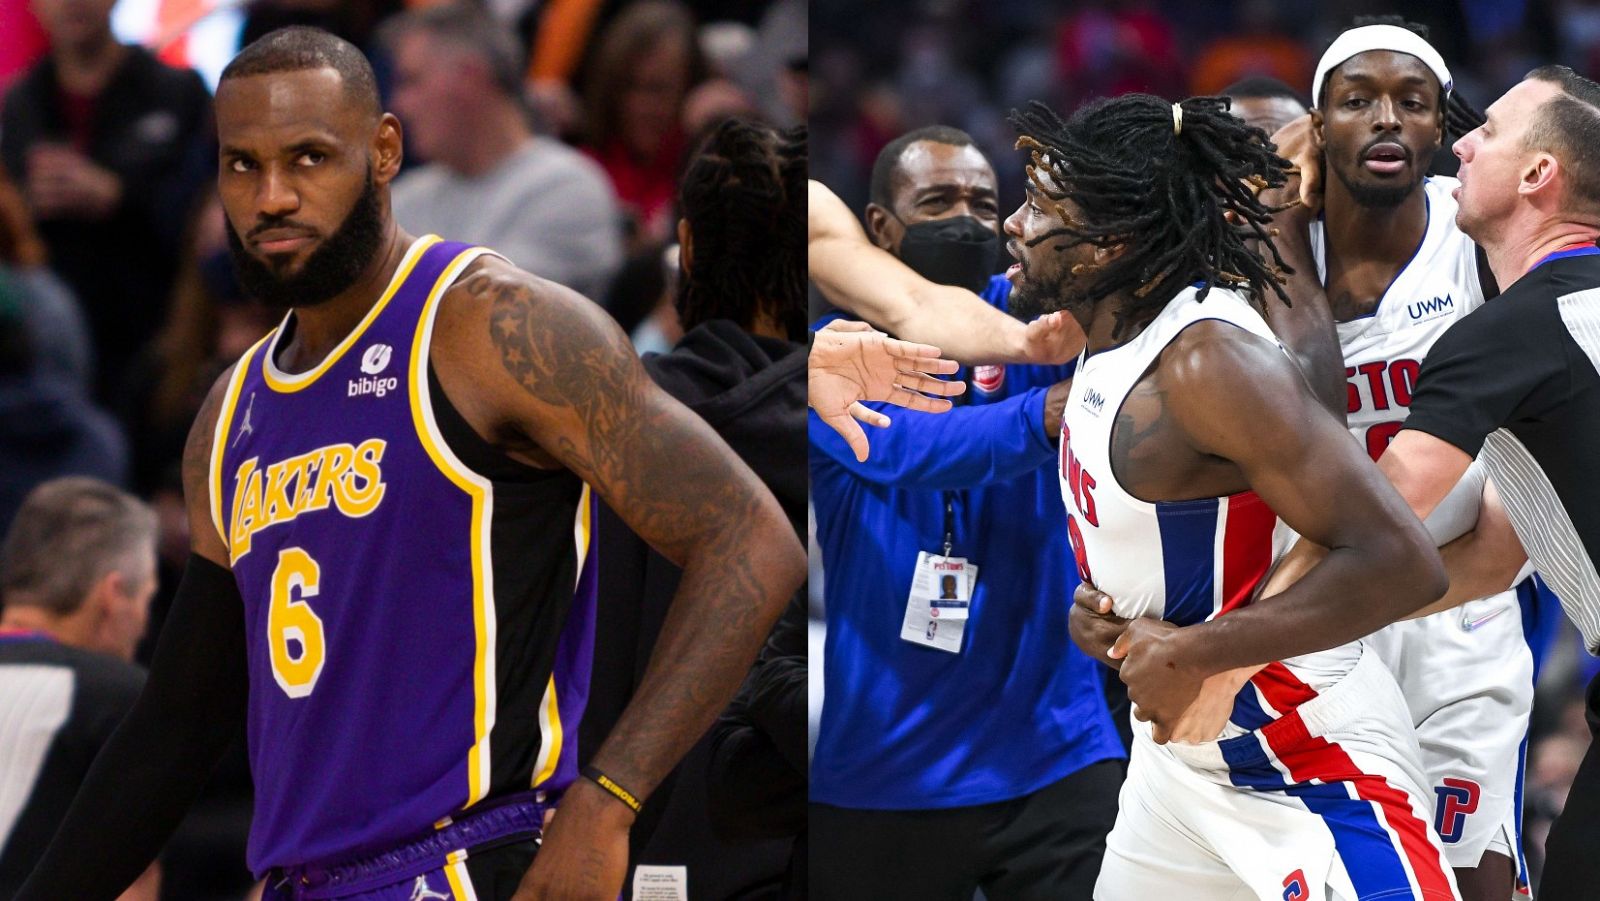 La expulsi�n de LeBron James desata la remontada y victoria de los Lakers ante Pistons